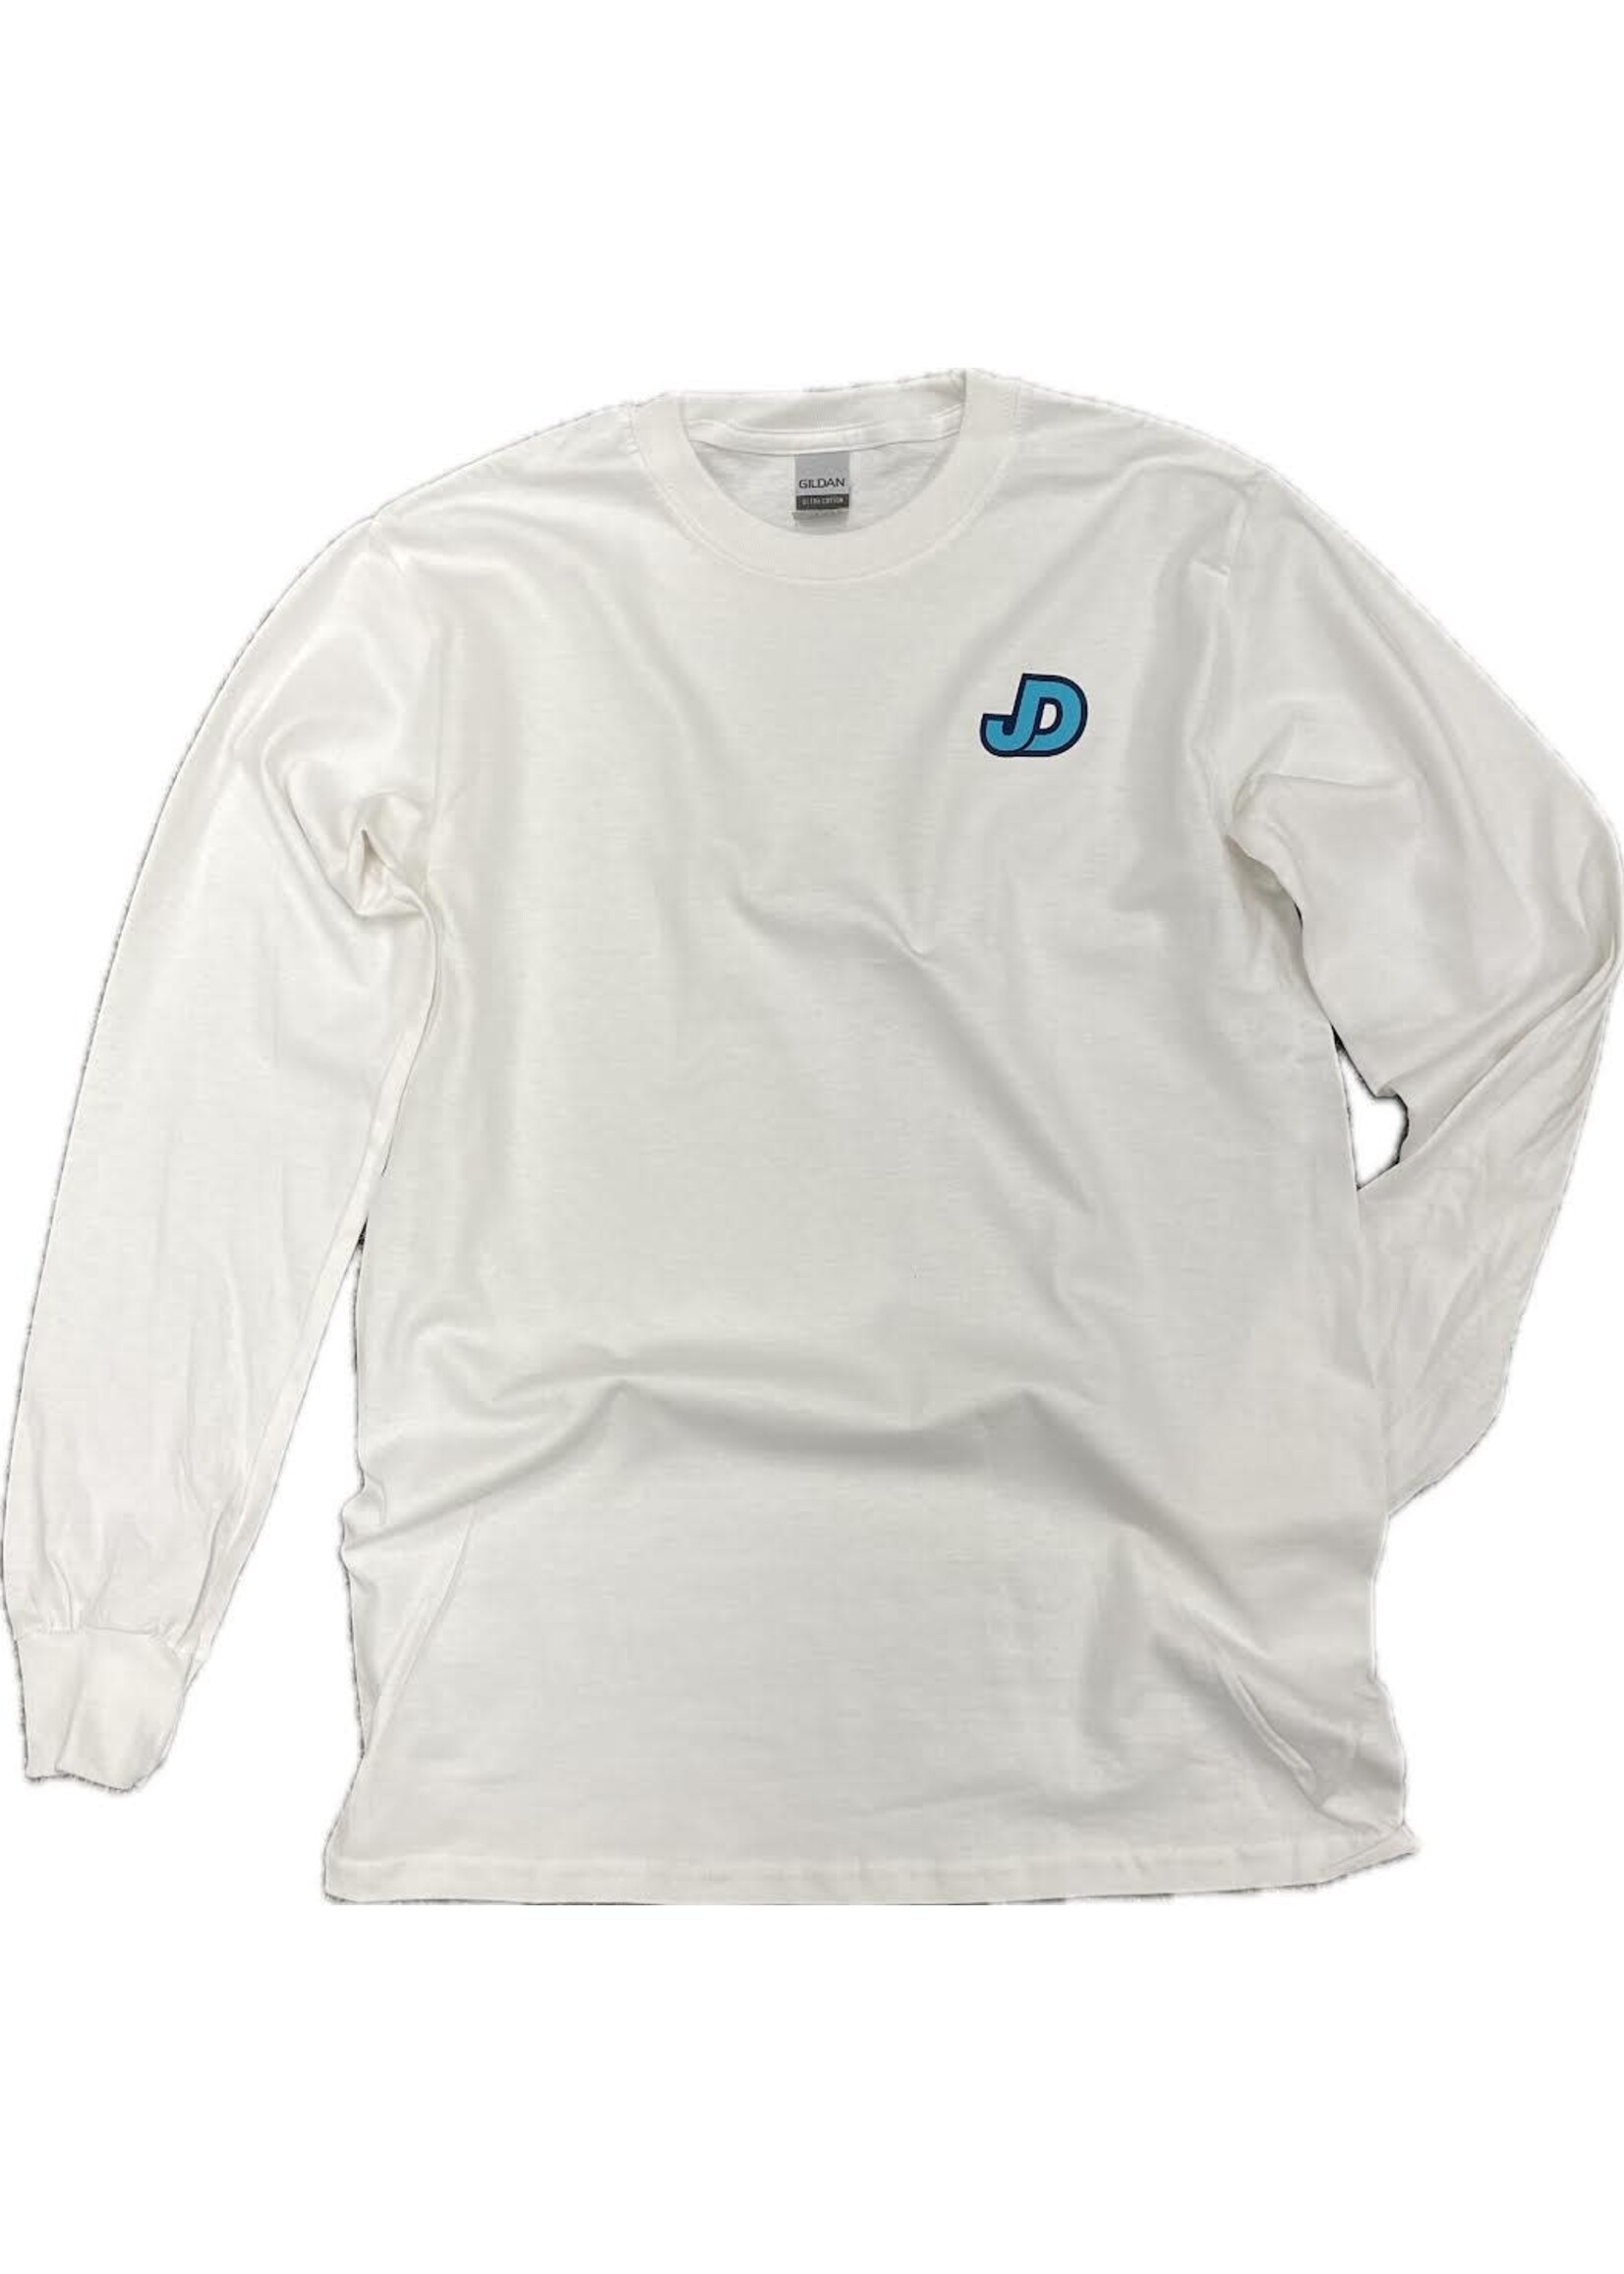 NON-UNIFORM JD Turquoise logo Long Sleeve Shirt, Unisex